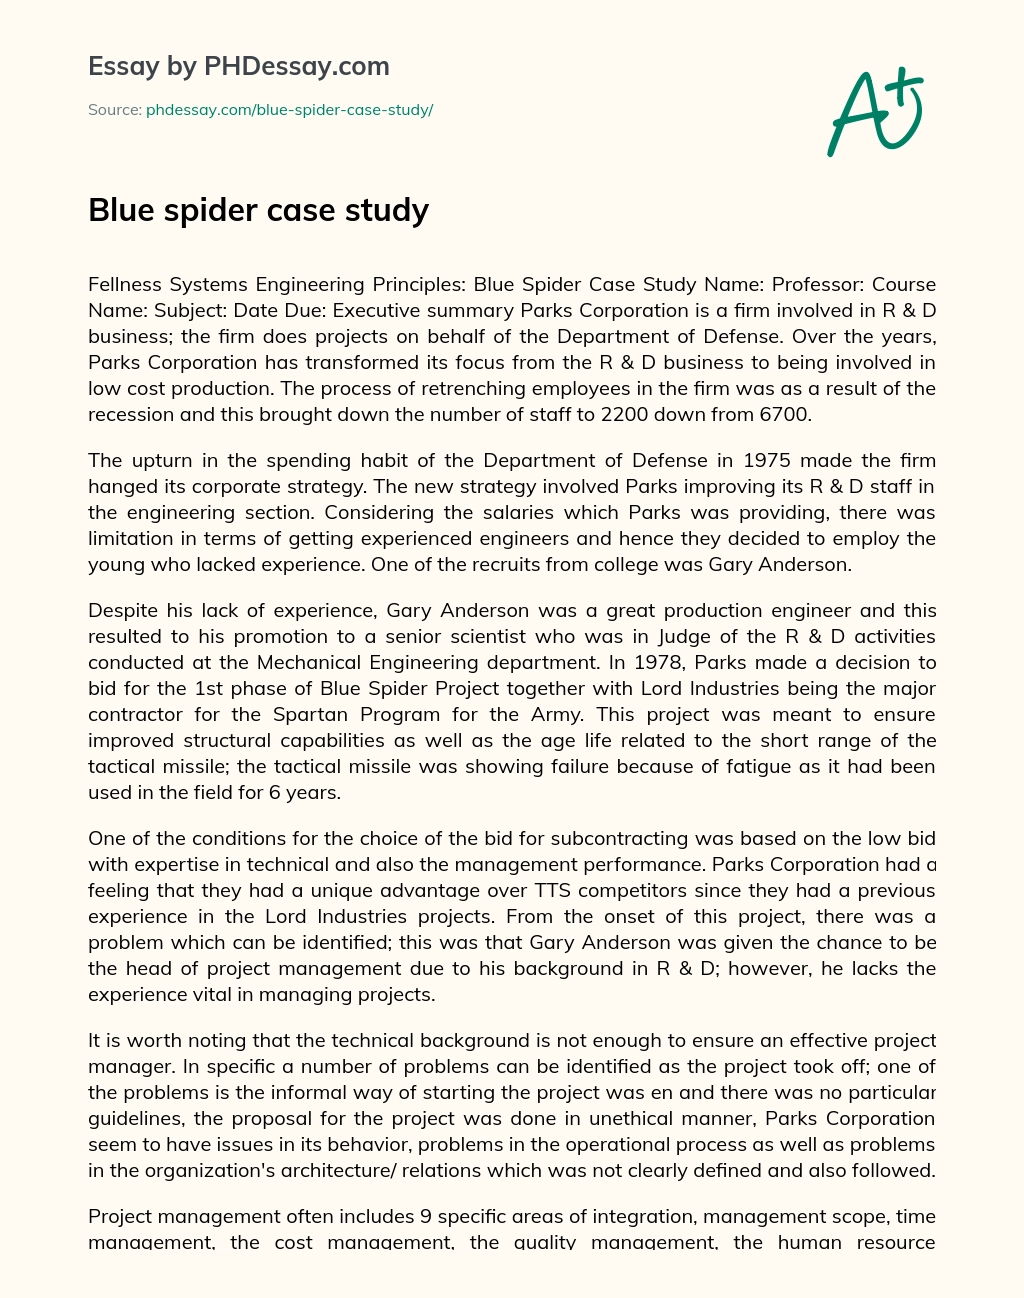 Blue spider case study essay